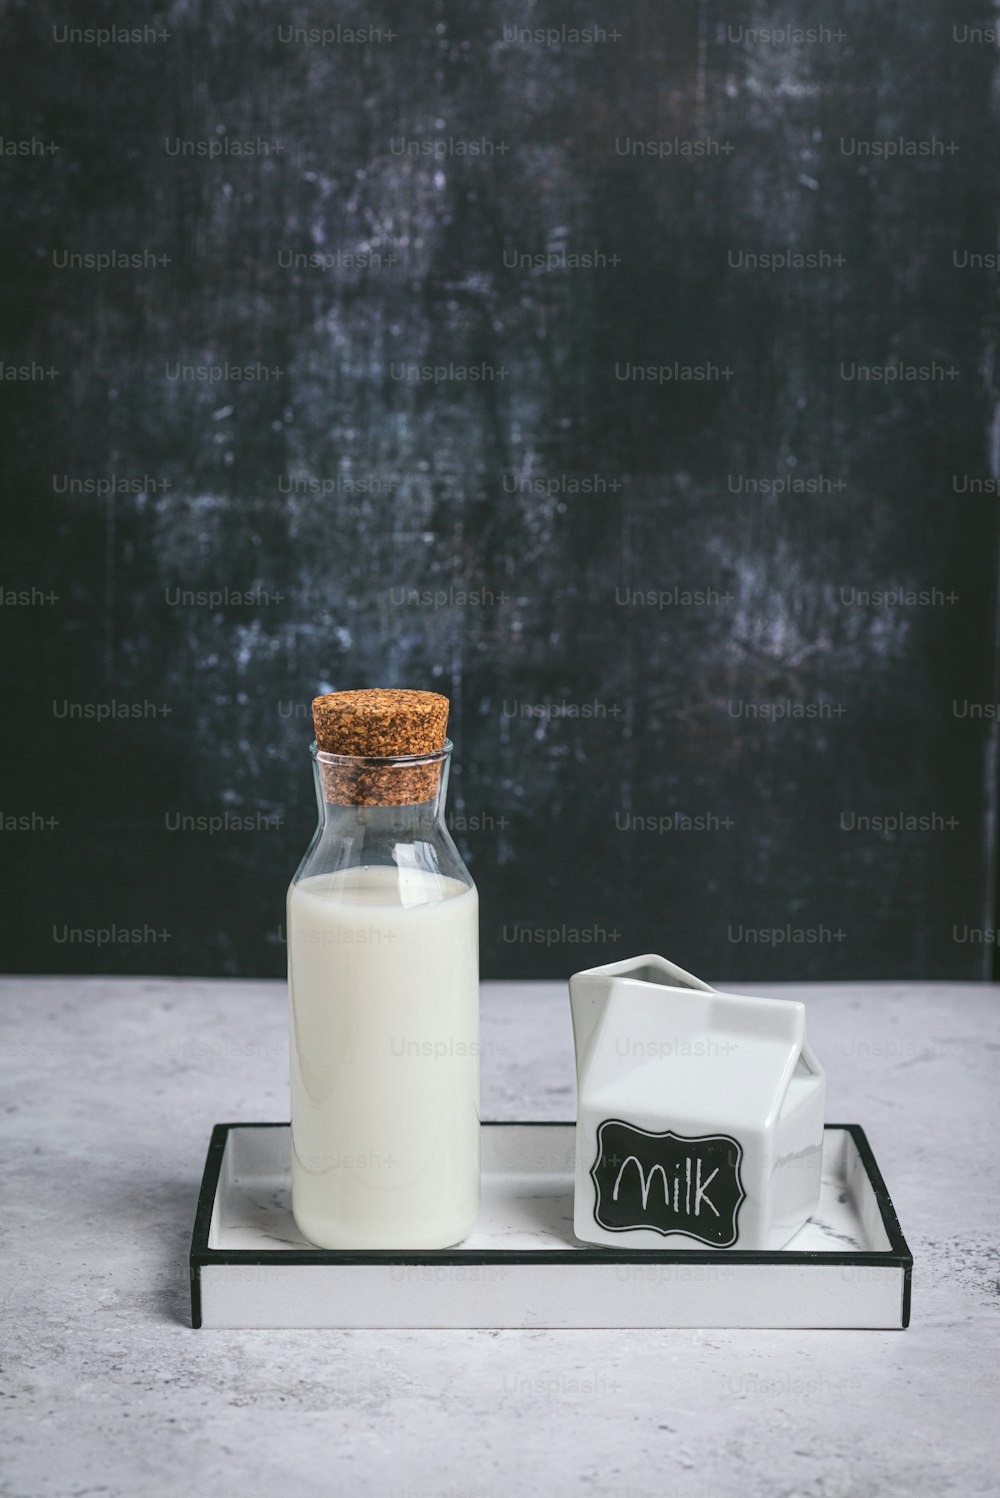 eine Flasche Milch und ein Glas Milch auf einem Tablett